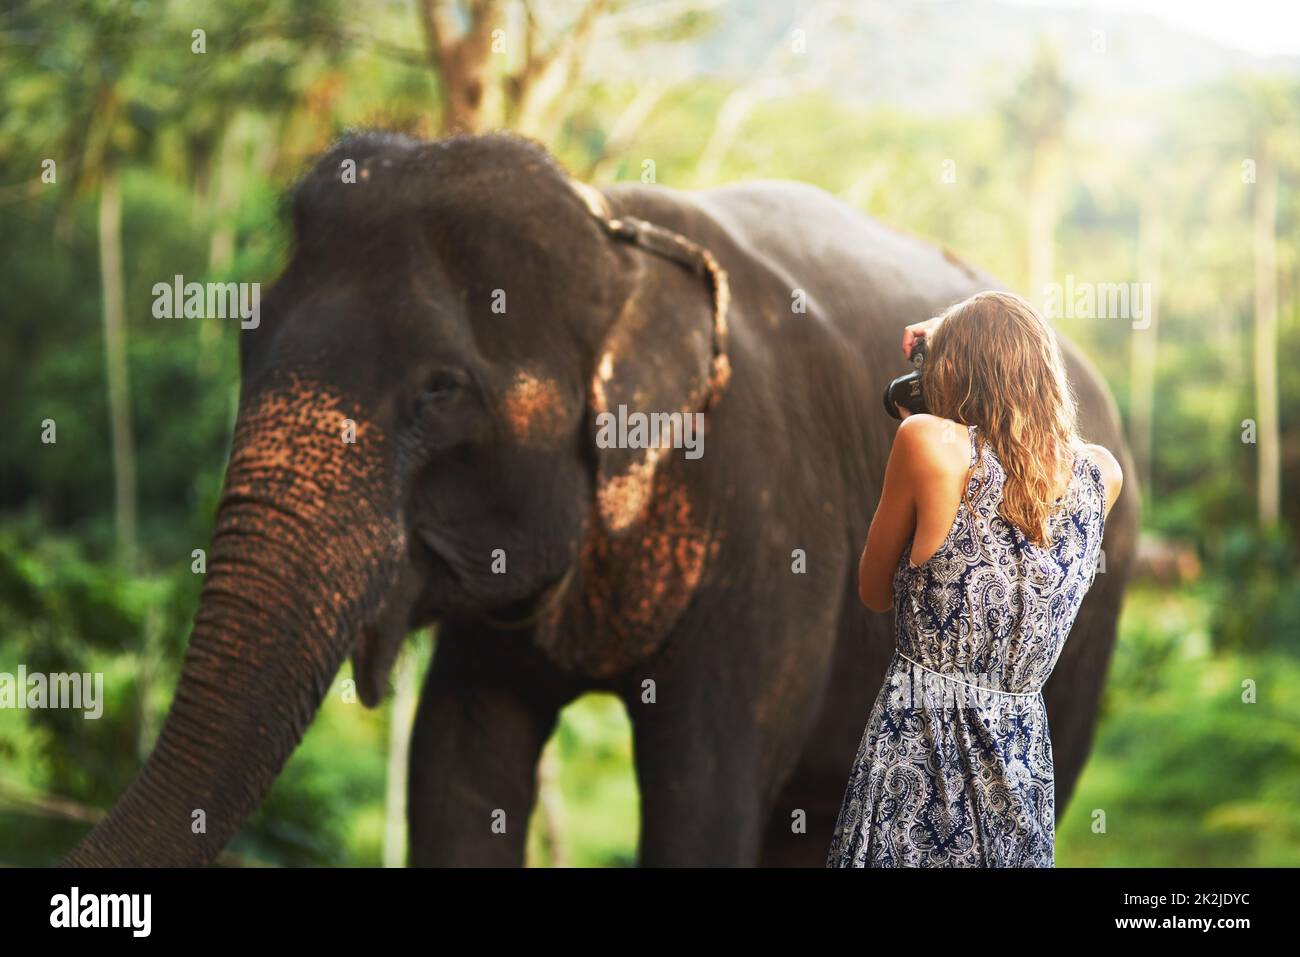 Grand et beau. Photo d'une jeune femme prenant une photo d'un éléphant mangeant des plantes dans la jungle. Banque D'Images